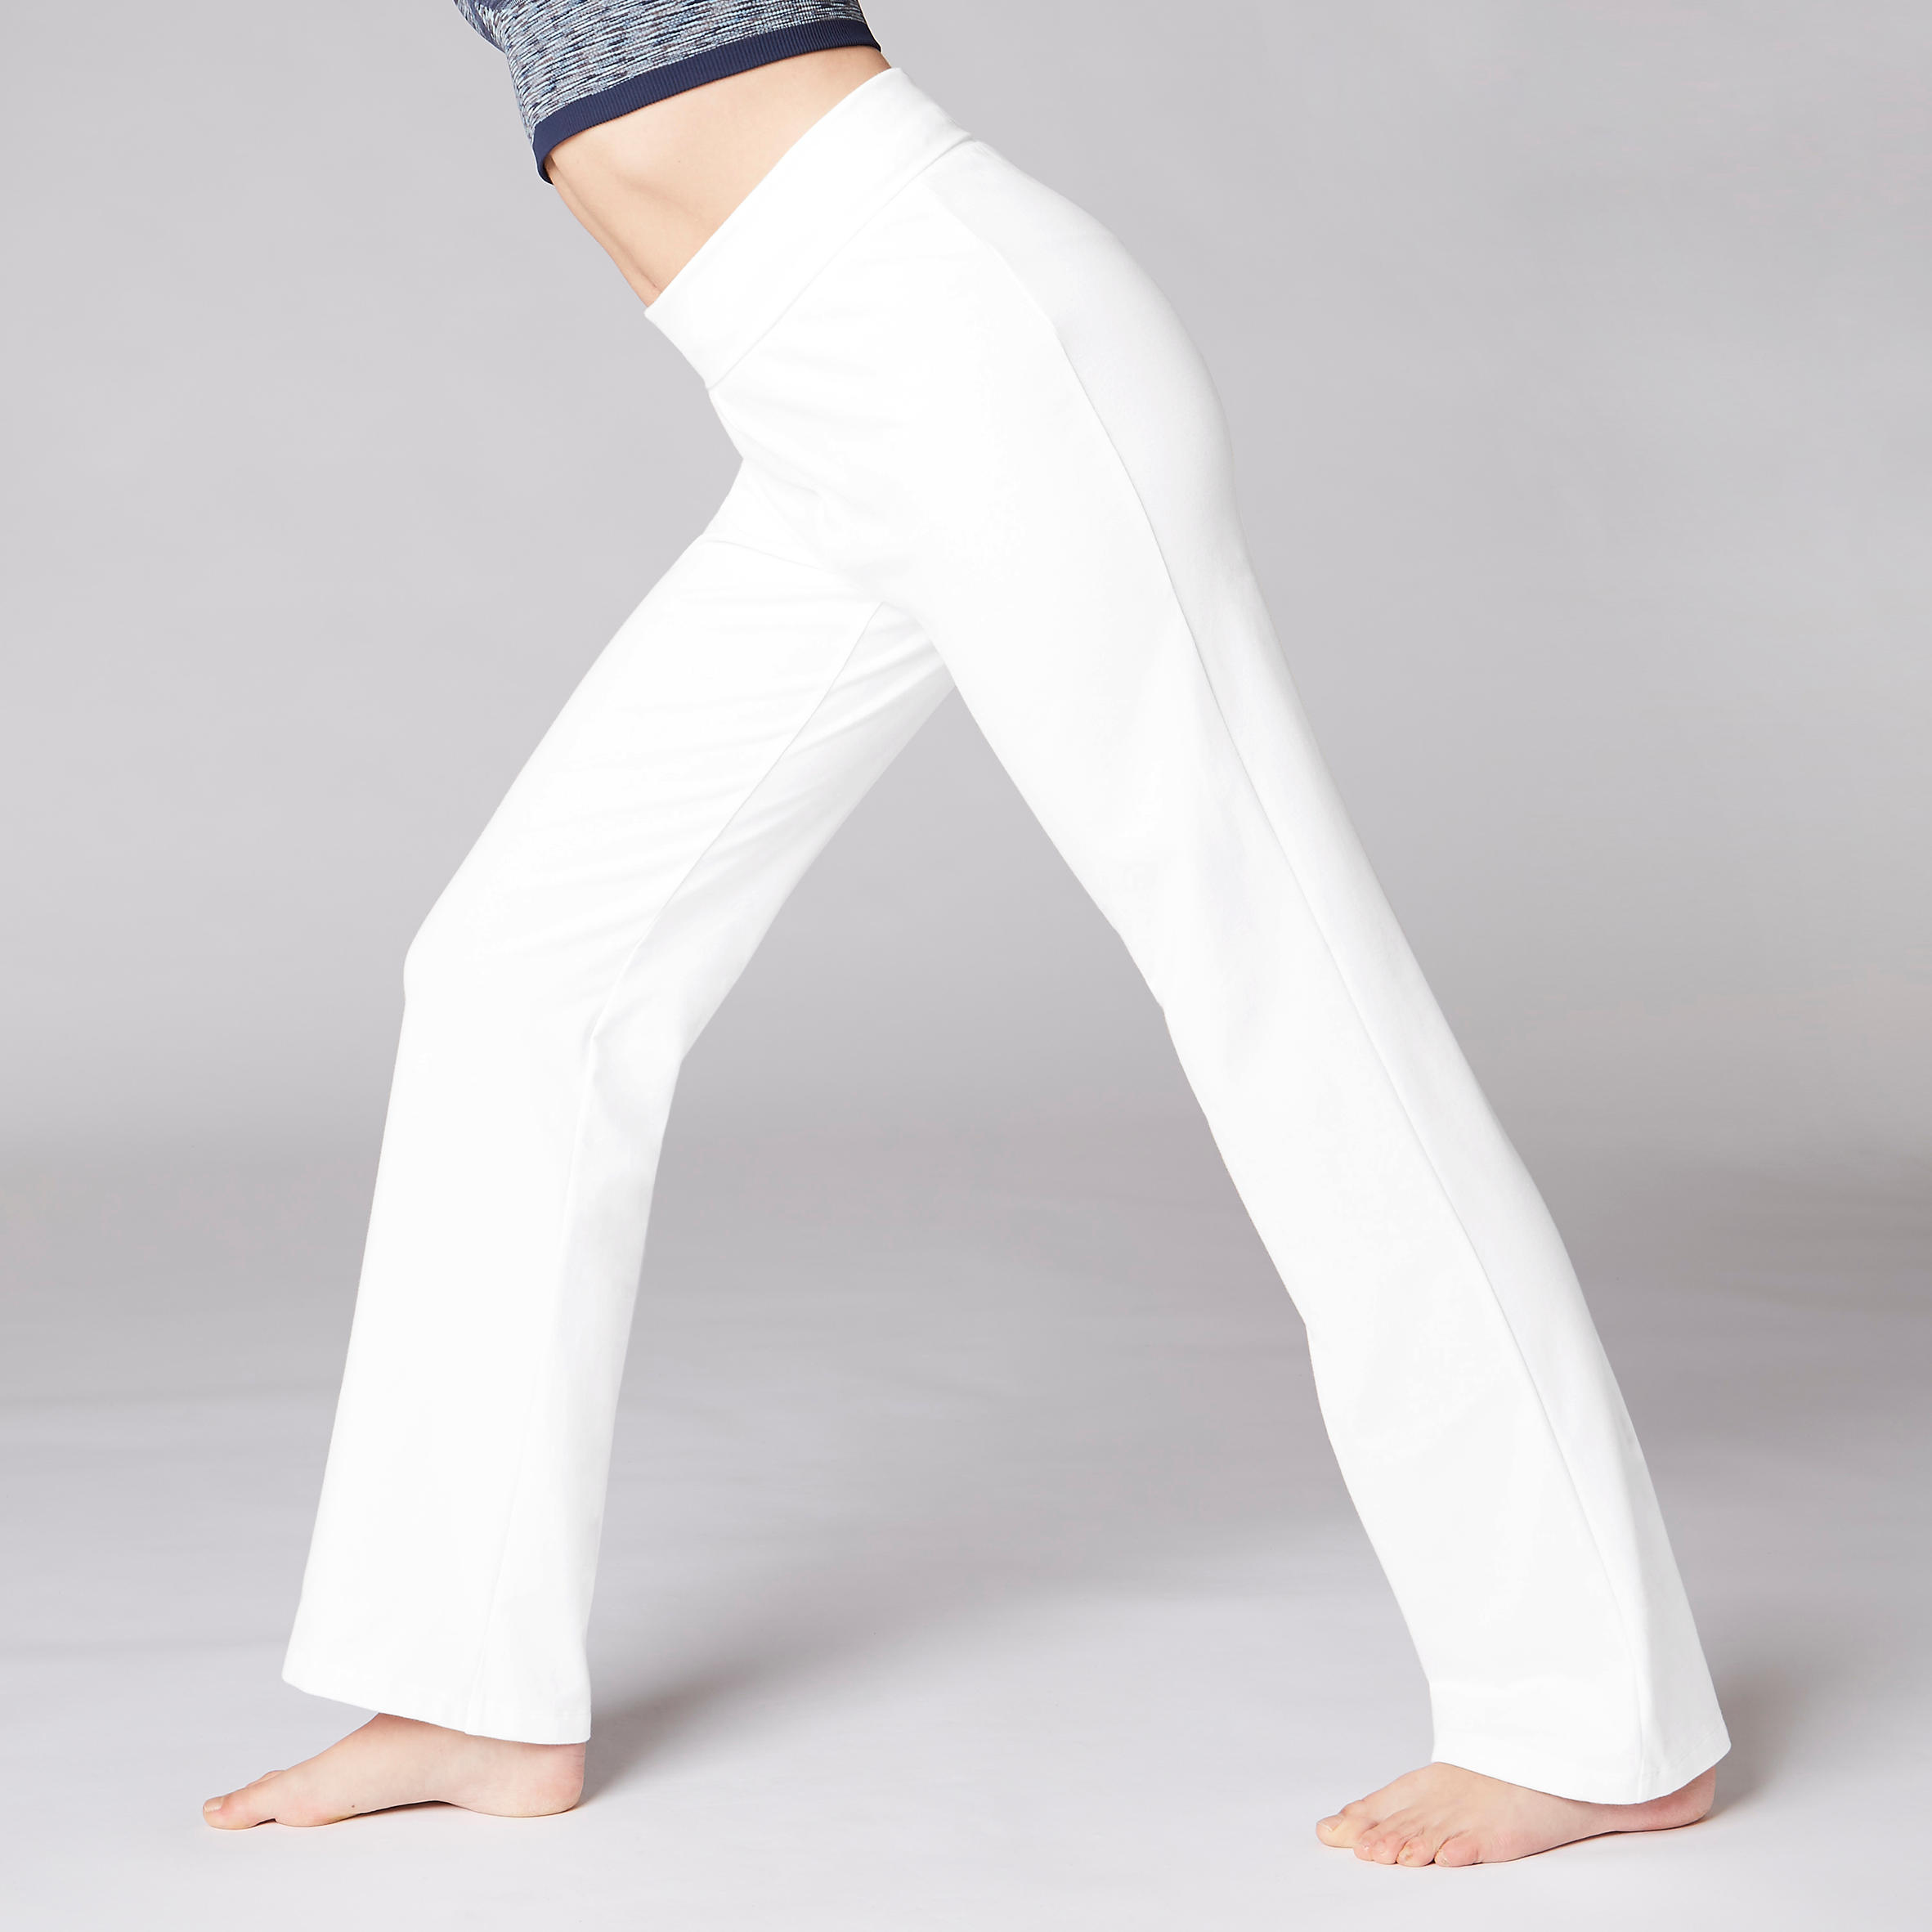 Women's Yoga Cotton Bottoms - White 5/12